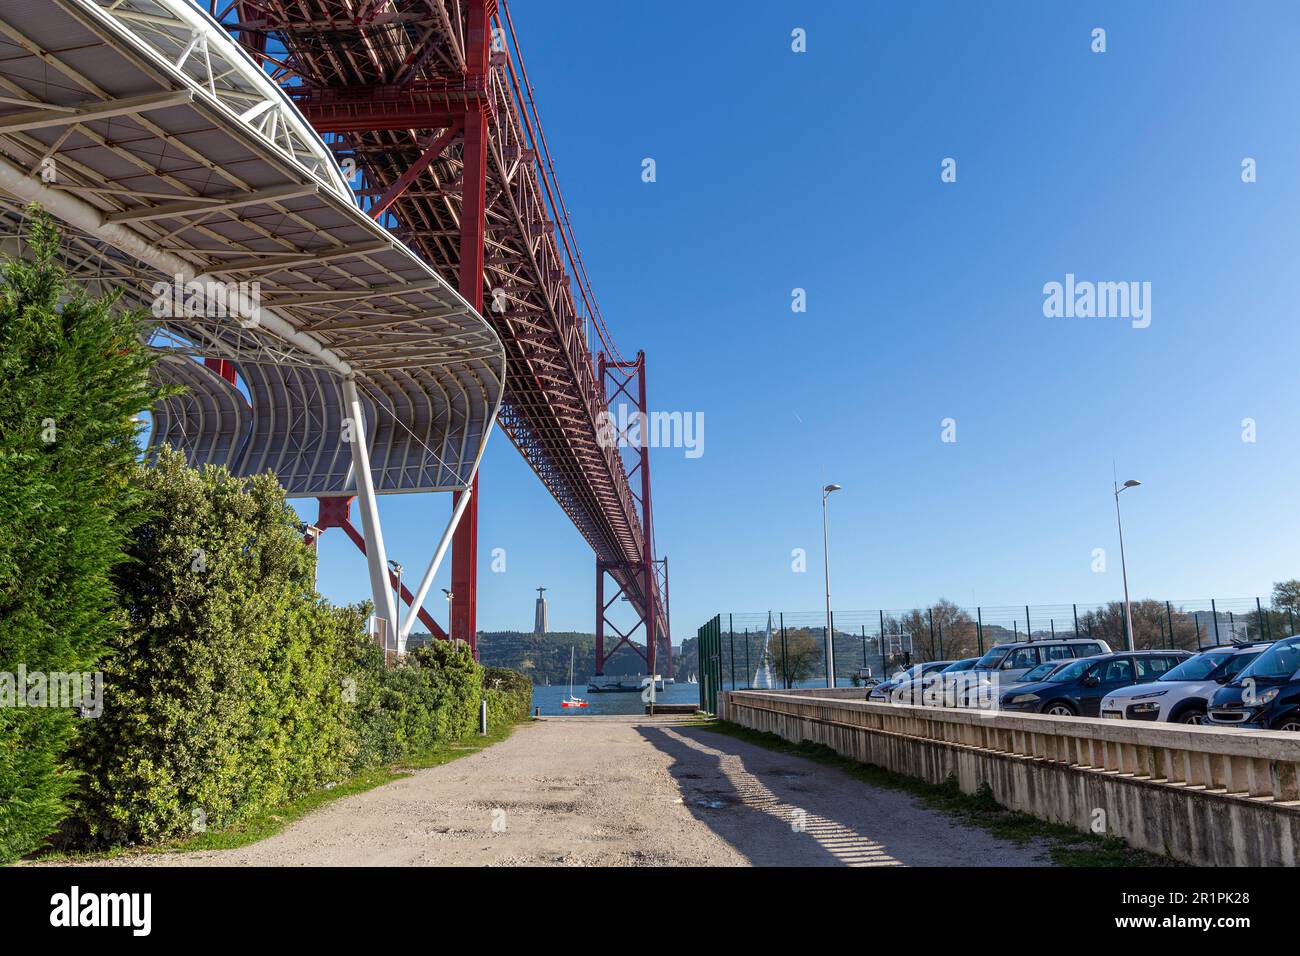 Il ponte del 25 aprile (Ponte 25 de Abril) è un ponte sospeso in acciaio situato a Lisbona, Portogallo, che attraversa il fiume Targus. E' uno dei punti di riferimento piu' famosi della regione. Foto Stock